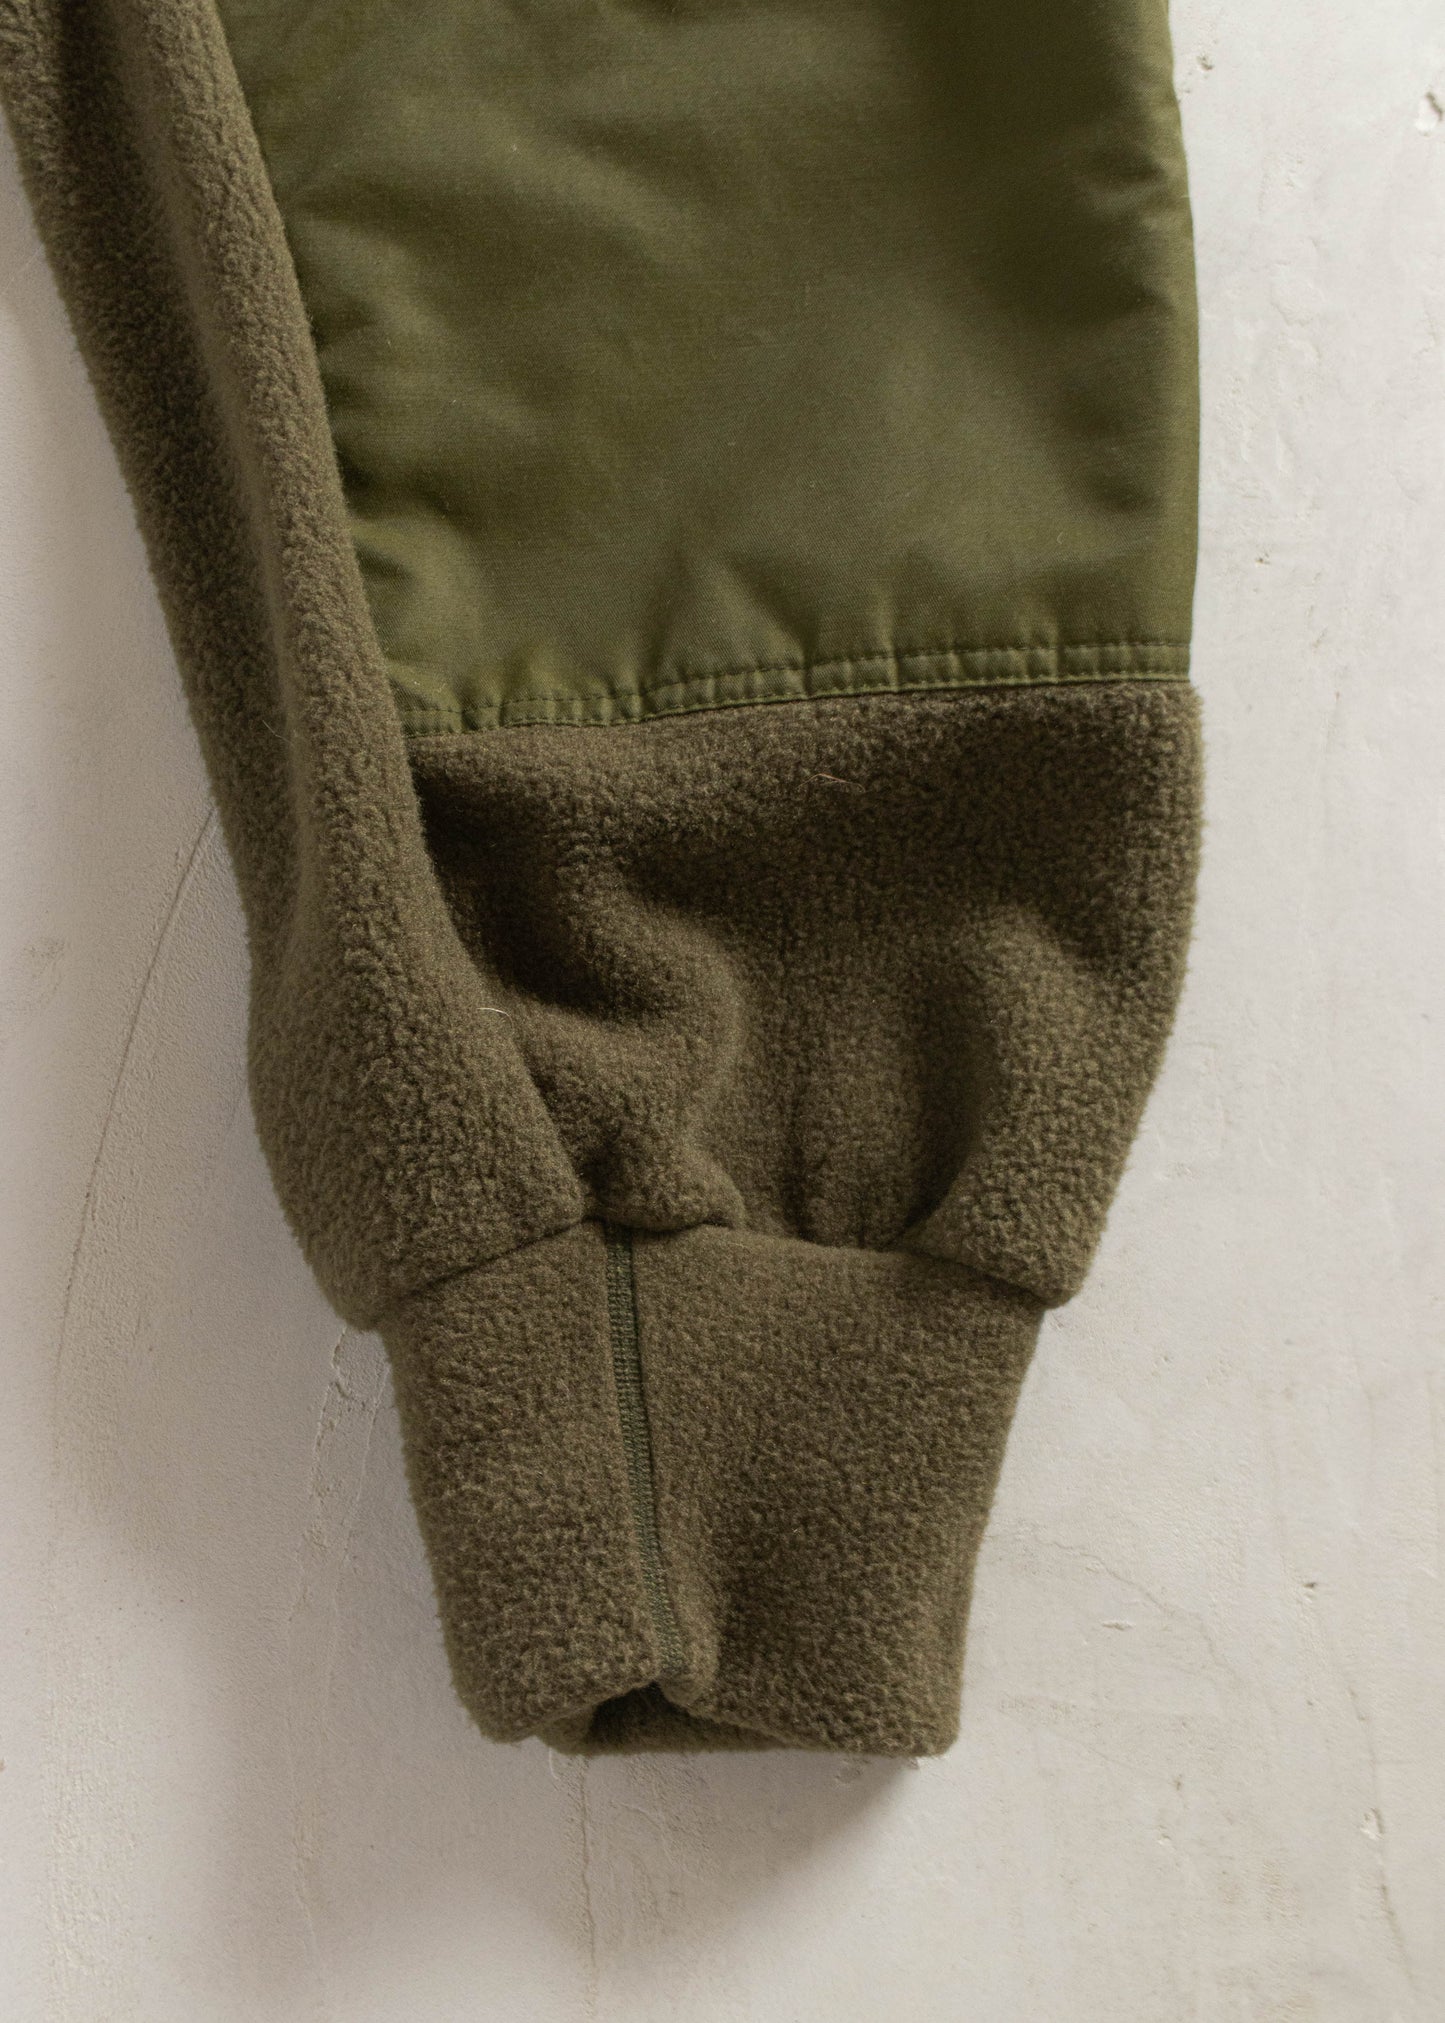 Vintage 1990s Military Combat Polar Fleece Sweatpants Size XL/2XL